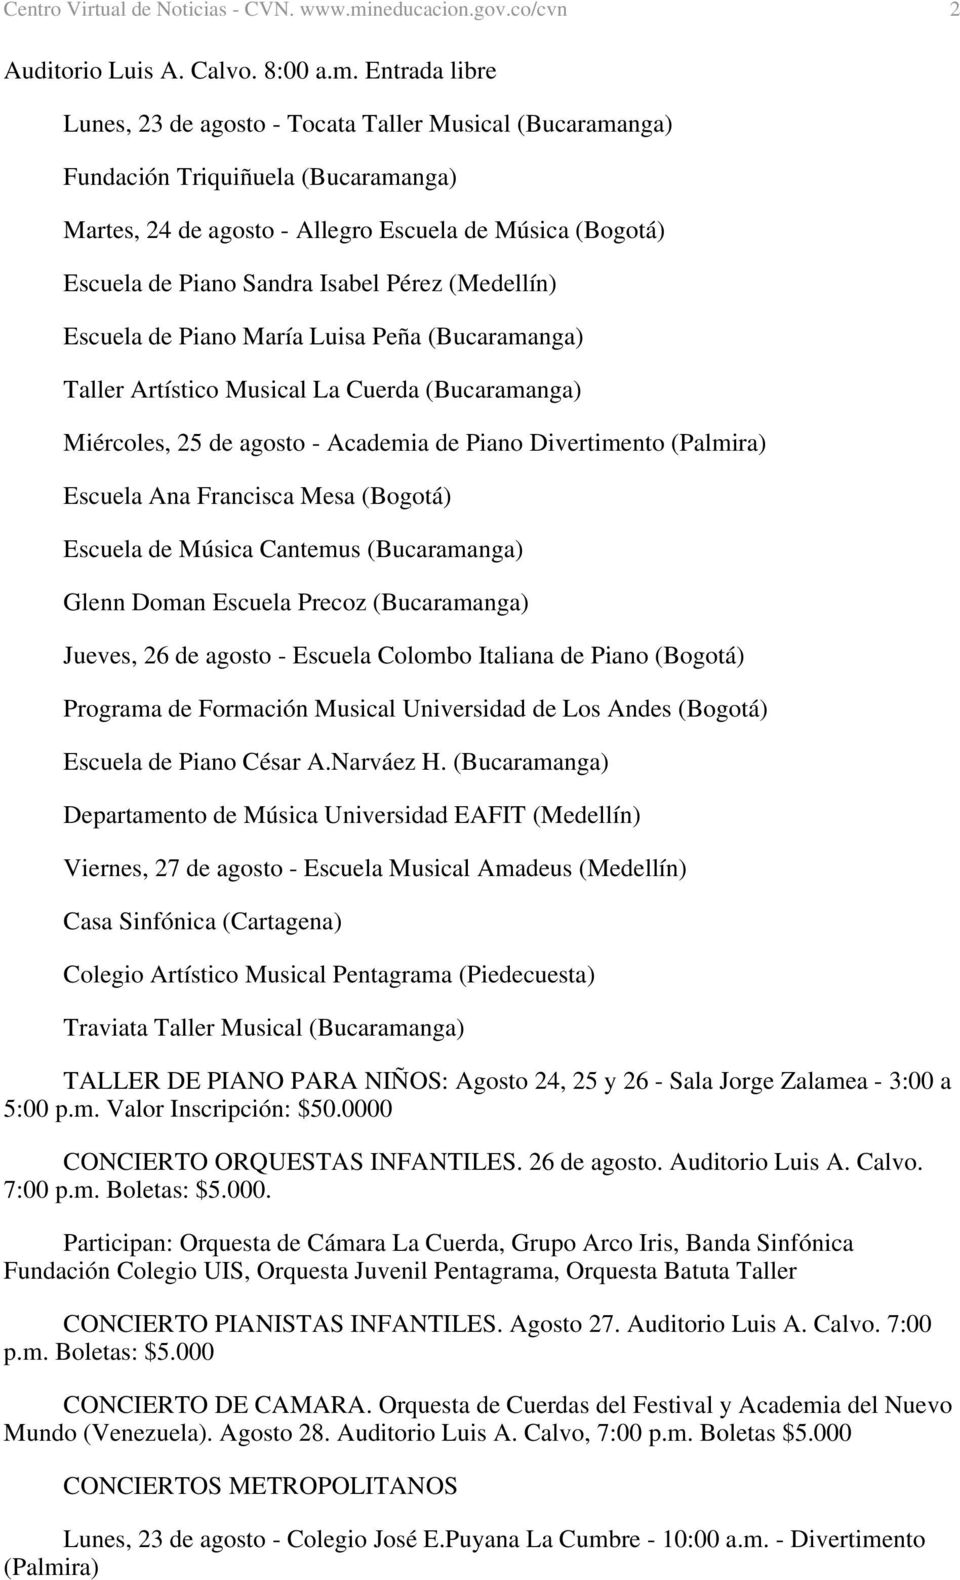 Entrada libre Lunes, 23 de agosto - Tocata Taller Musical (Bucaramanga) Fundación Triquiñuela (Bucaramanga) Martes, 24 de agosto - Allegro Escuela de Música (Bogotá) Escuela de Piano Sandra Isabel